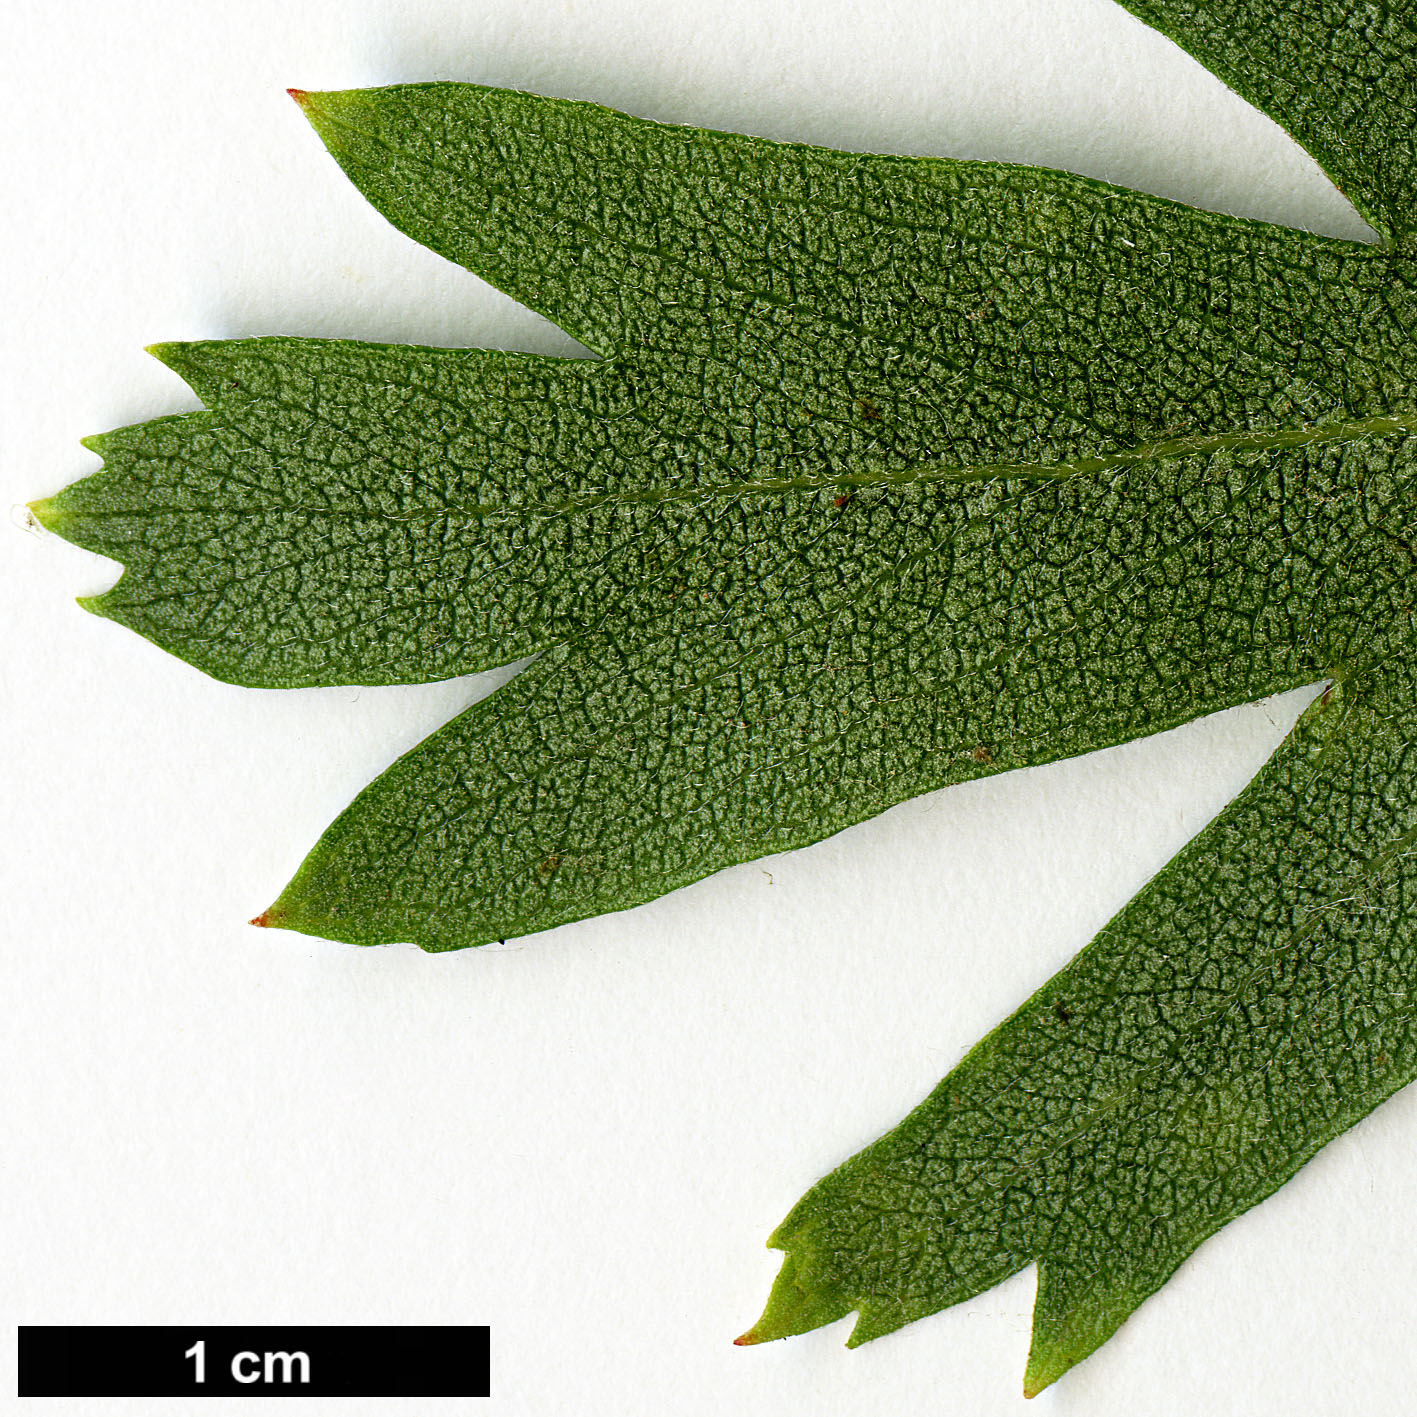 High resolution image: Family: Rosaceae - Genus: Crataegus - Taxon: azarolus - SpeciesSub: 'Geraki'